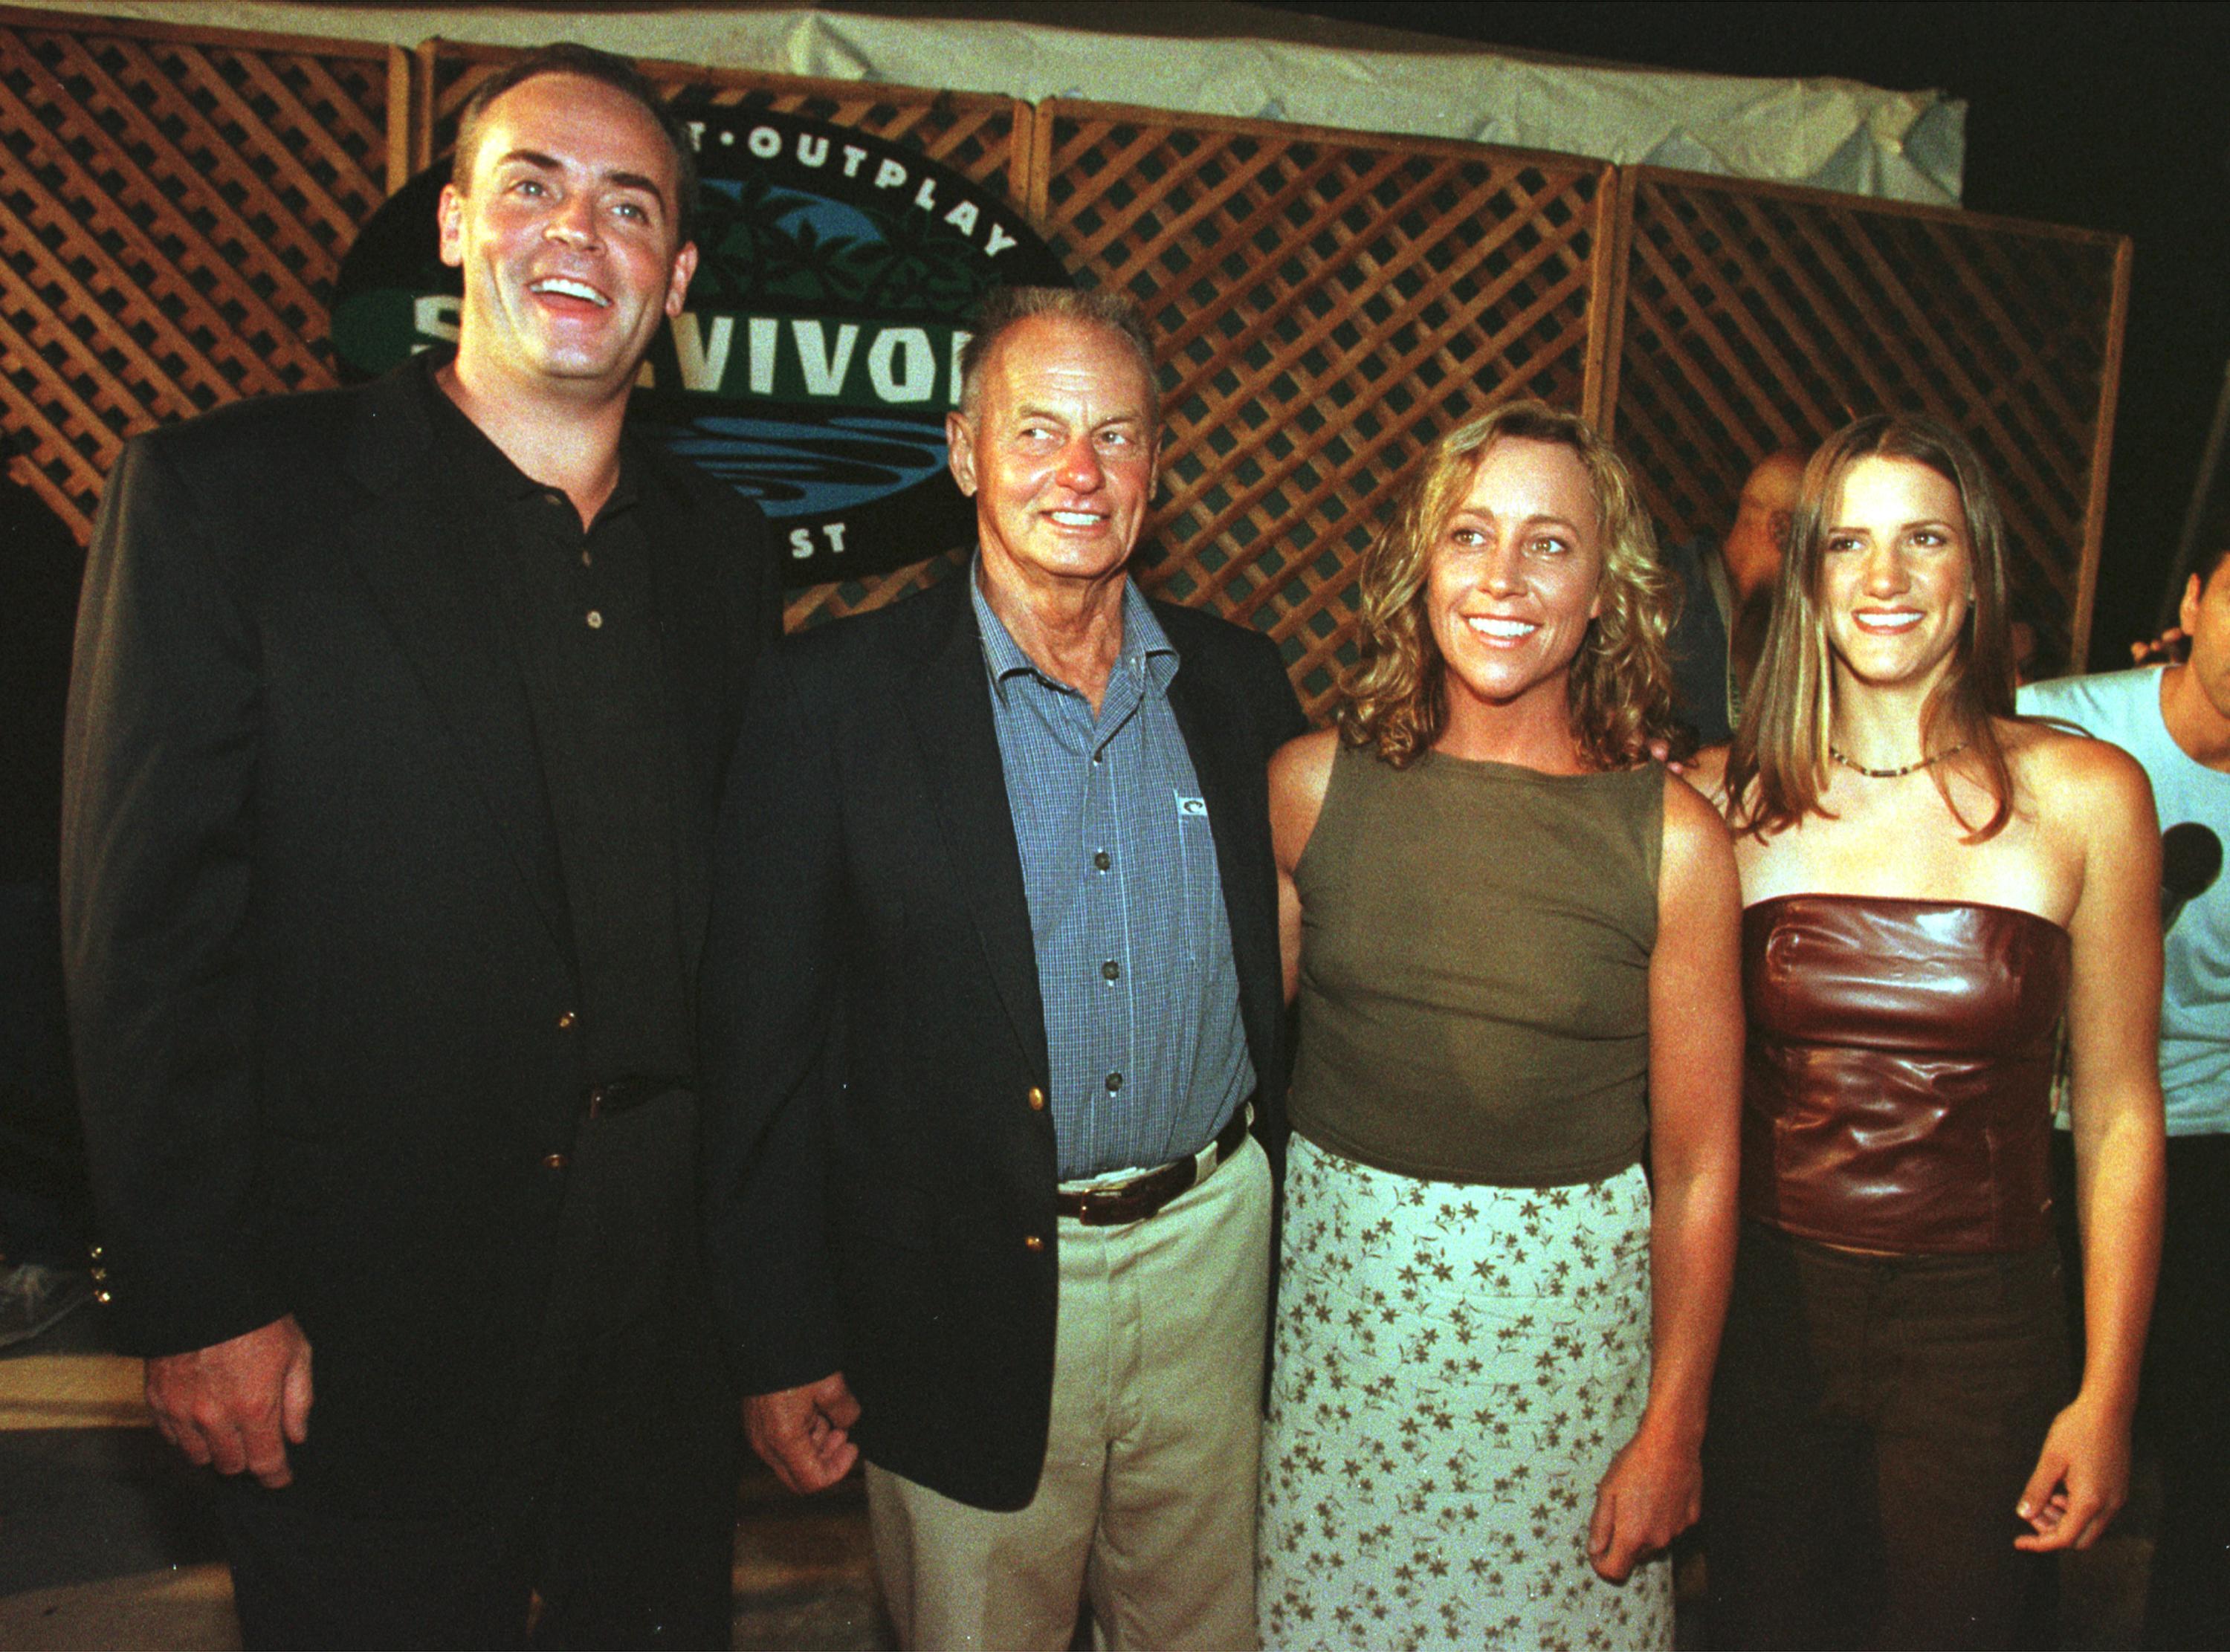 Richard Hatch, Rudy Boesch, Susan Hawk and Kelly Wiglesworth from 'Survivor: Borneo'